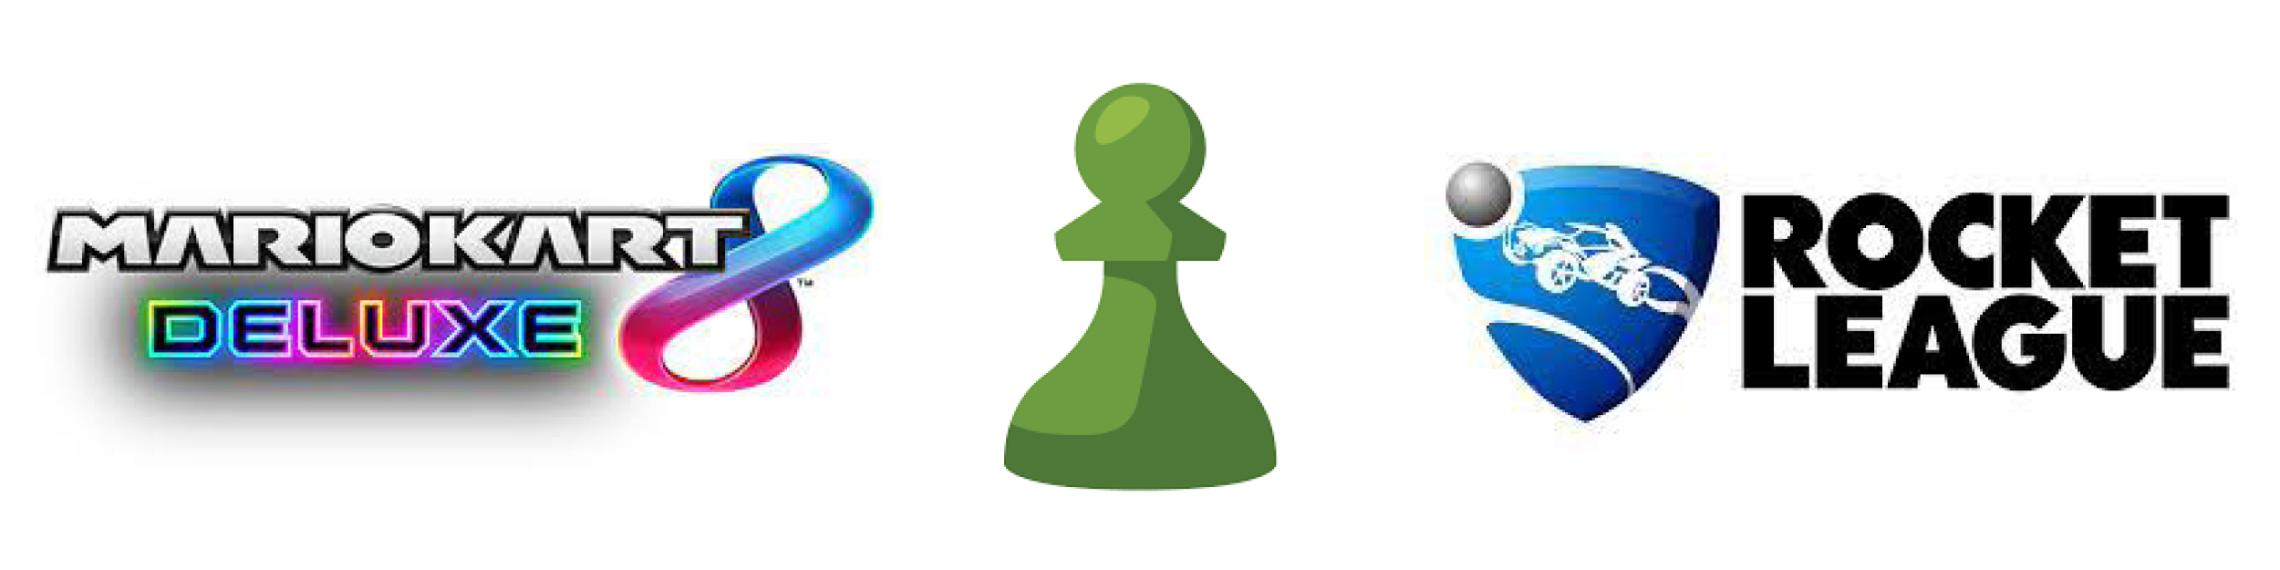 Video game logos - Mario Kart 8 Deluxe, Chess, Rocket League